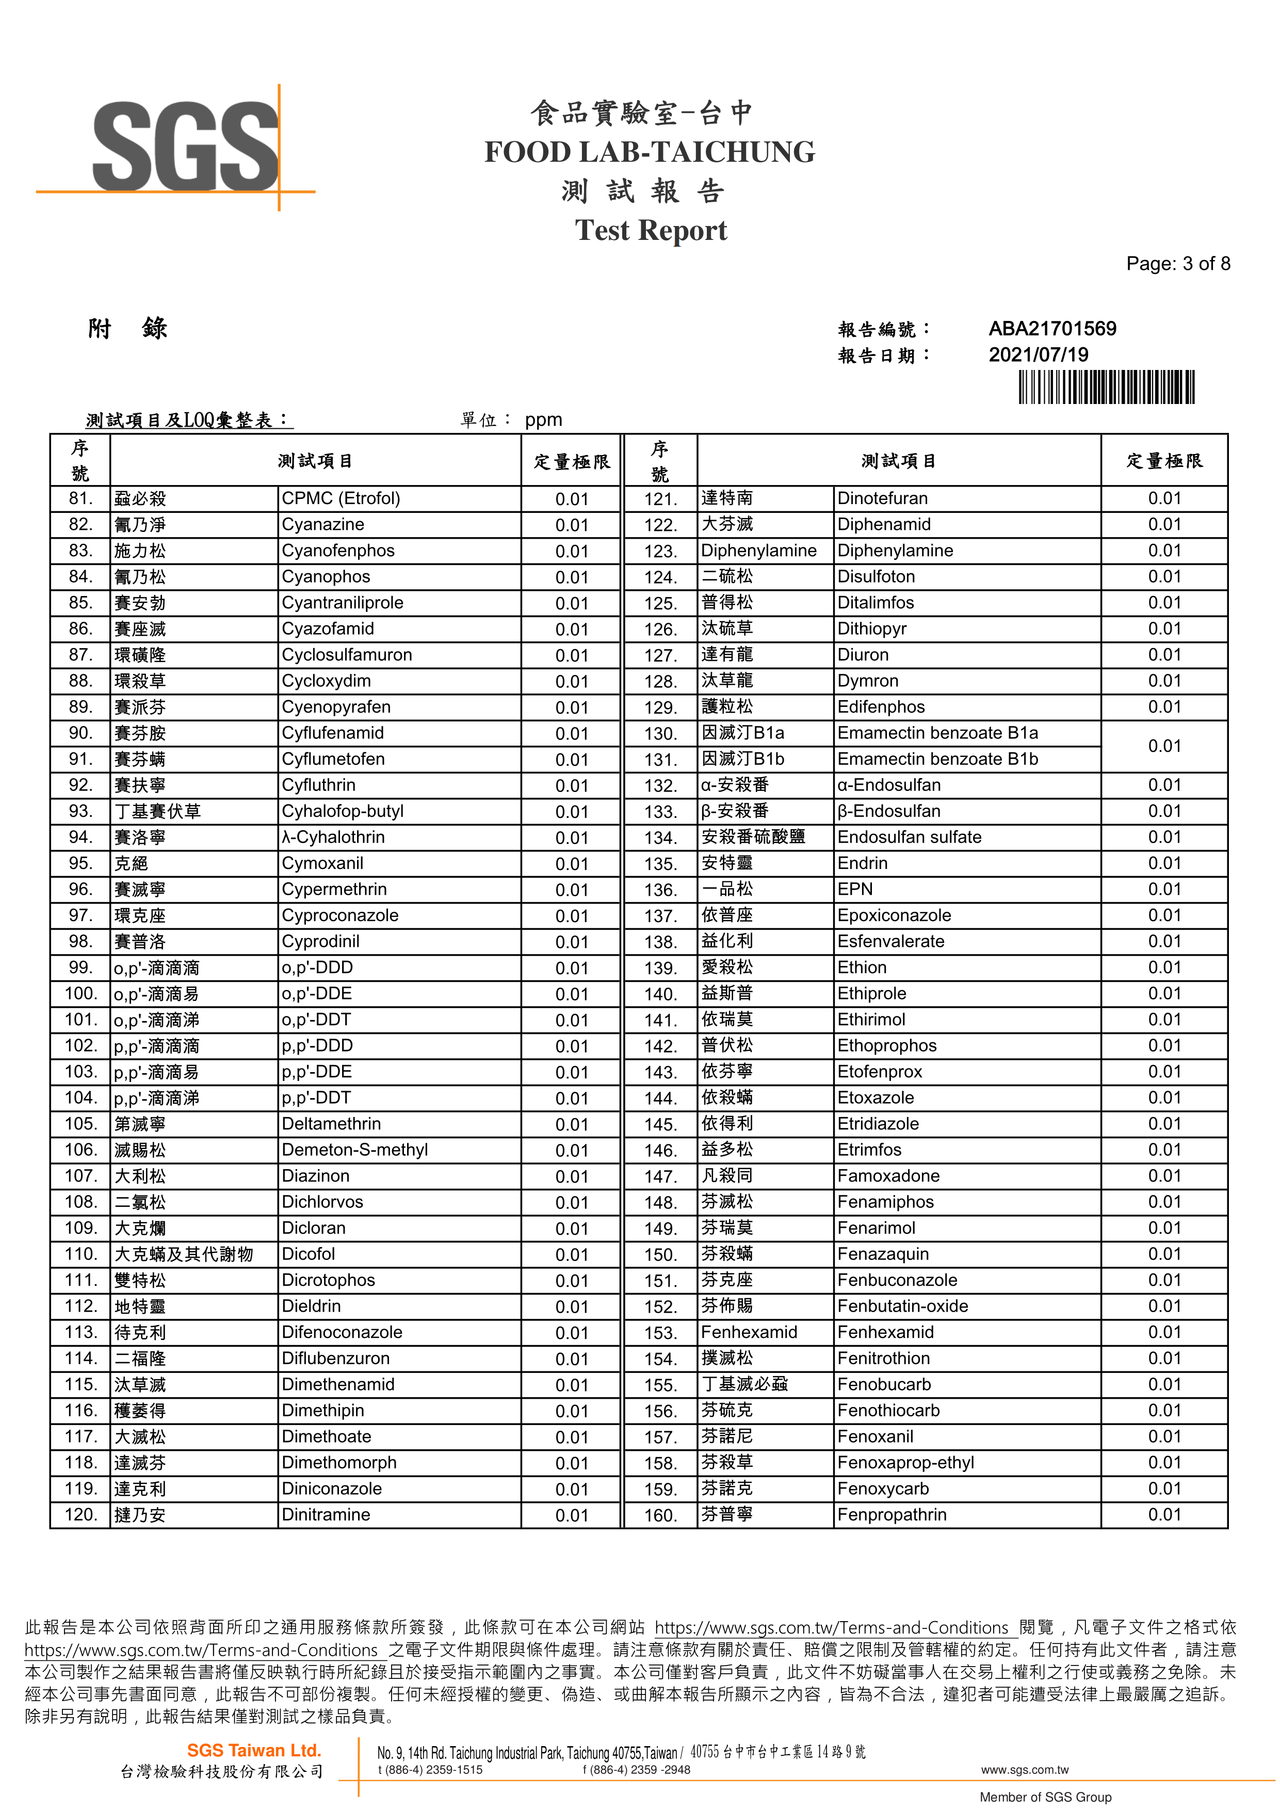 貝貝吻魚寶寶粥-農藥殘留380檢驗報告2021.07.19